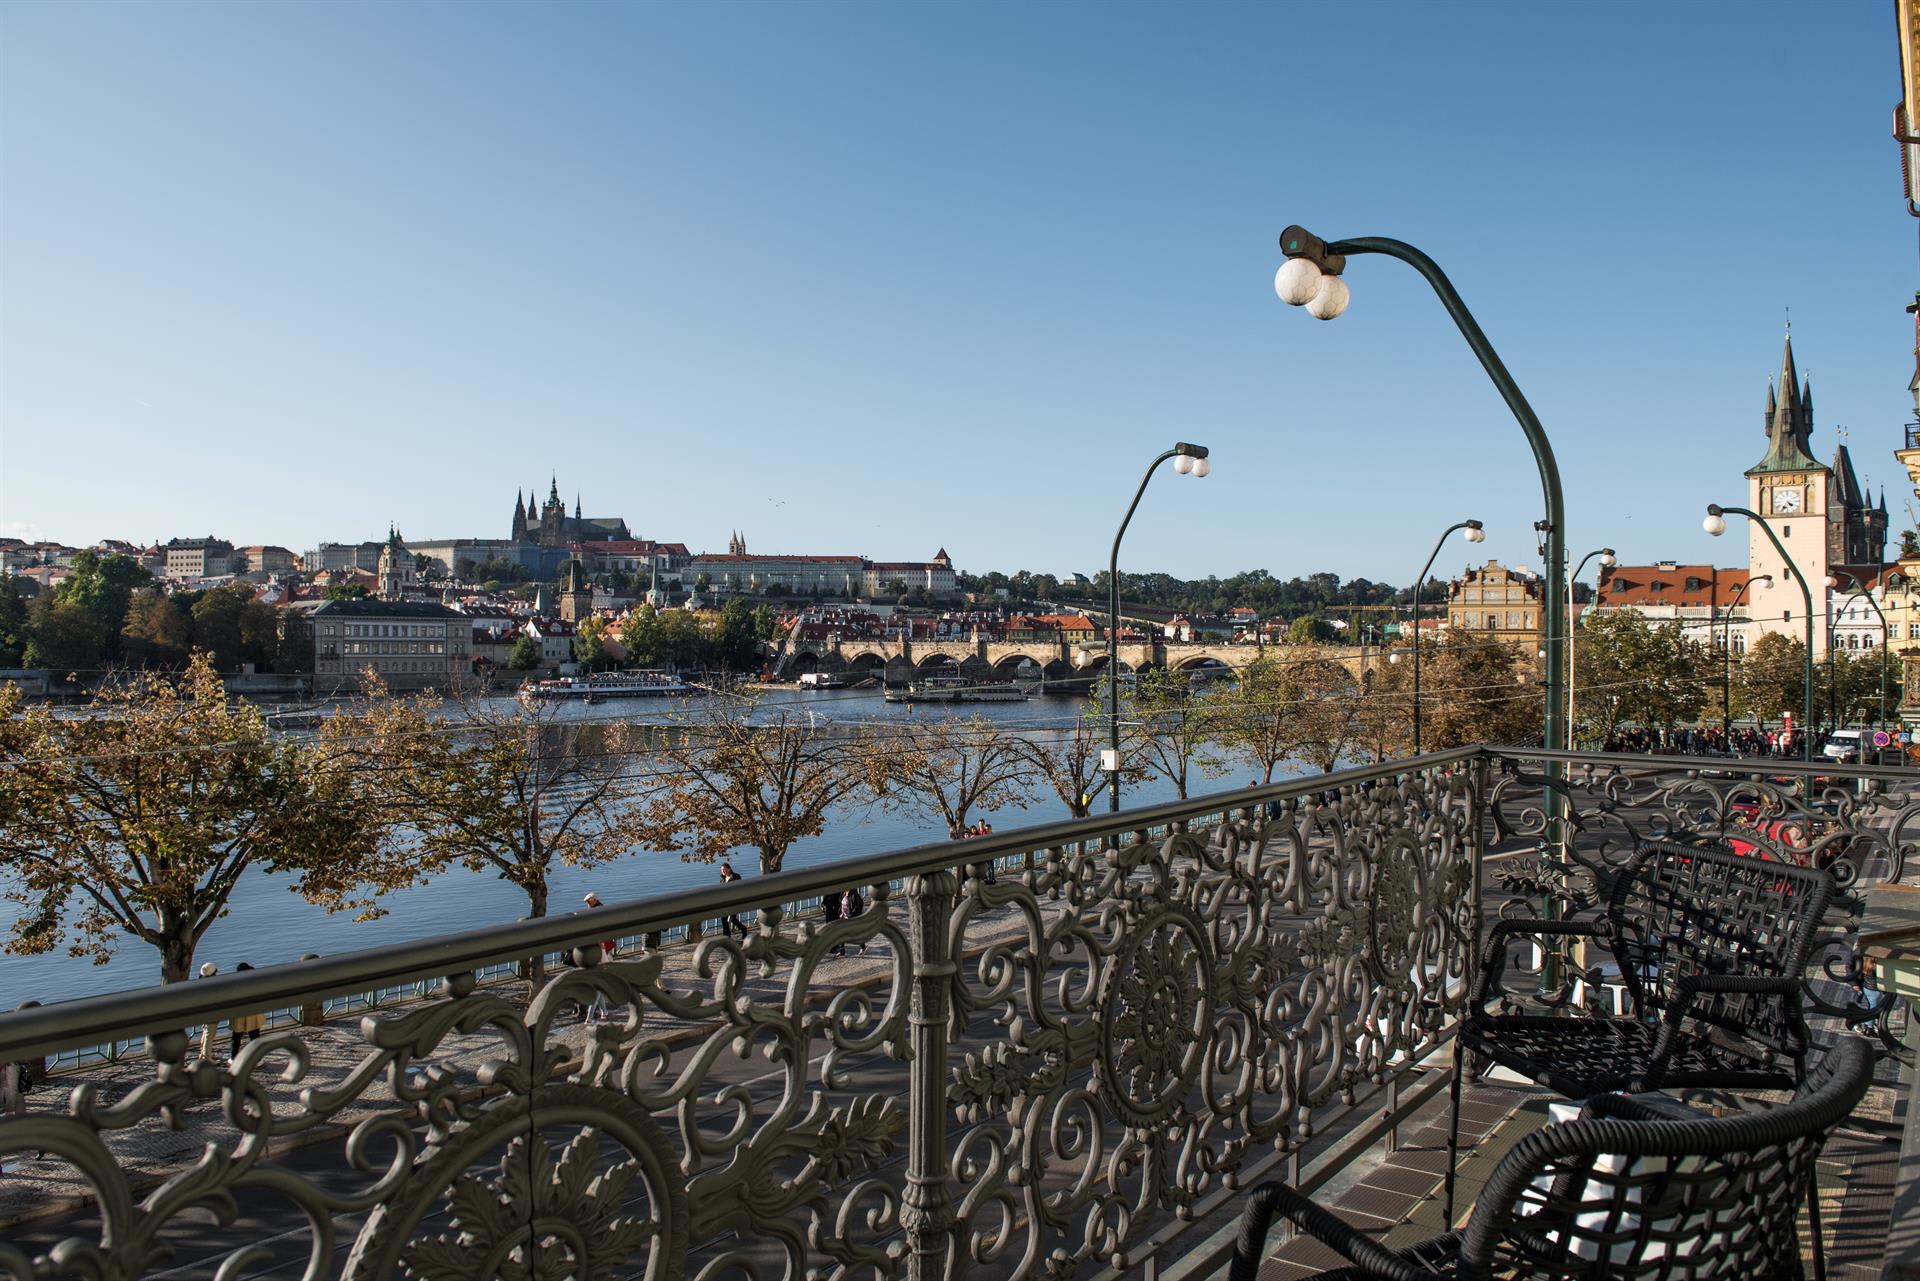 Byt má unikátní výhled na Pražský hrad, Karlův most nebo Petřínskou rozhlednu.